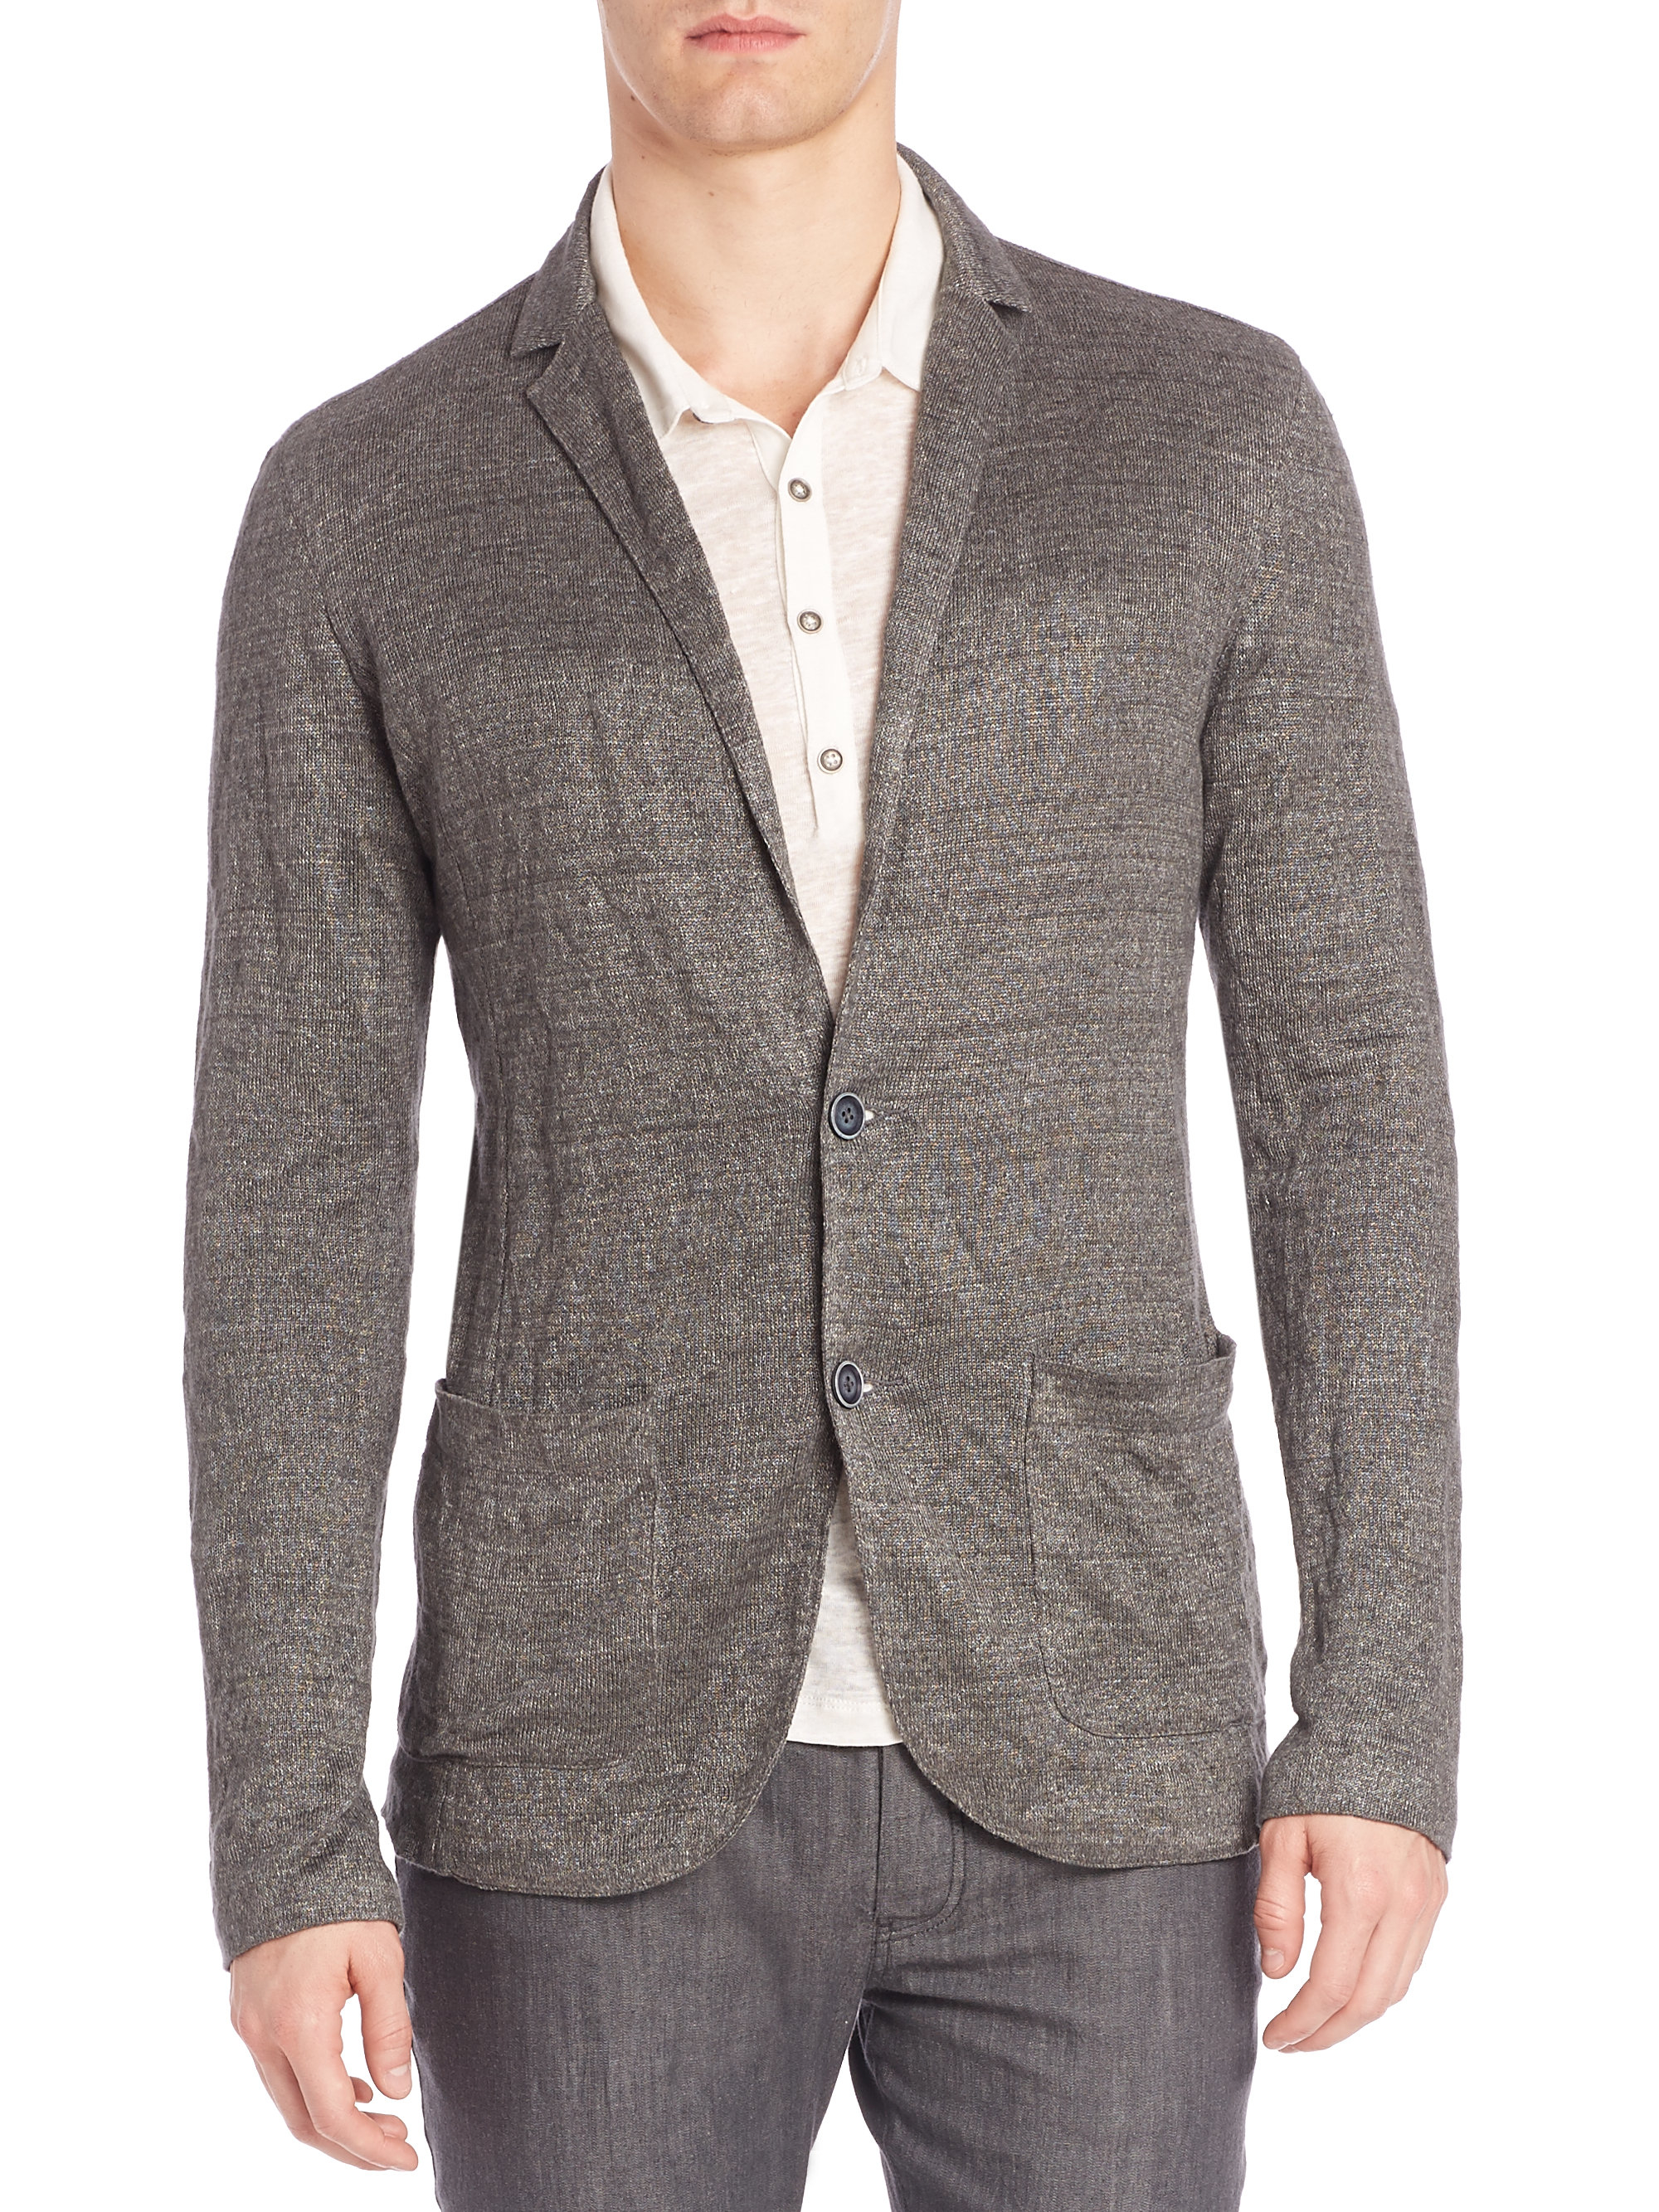 Lyst - John Varvatos Crinkled Sweater Blazer in Gray for Men